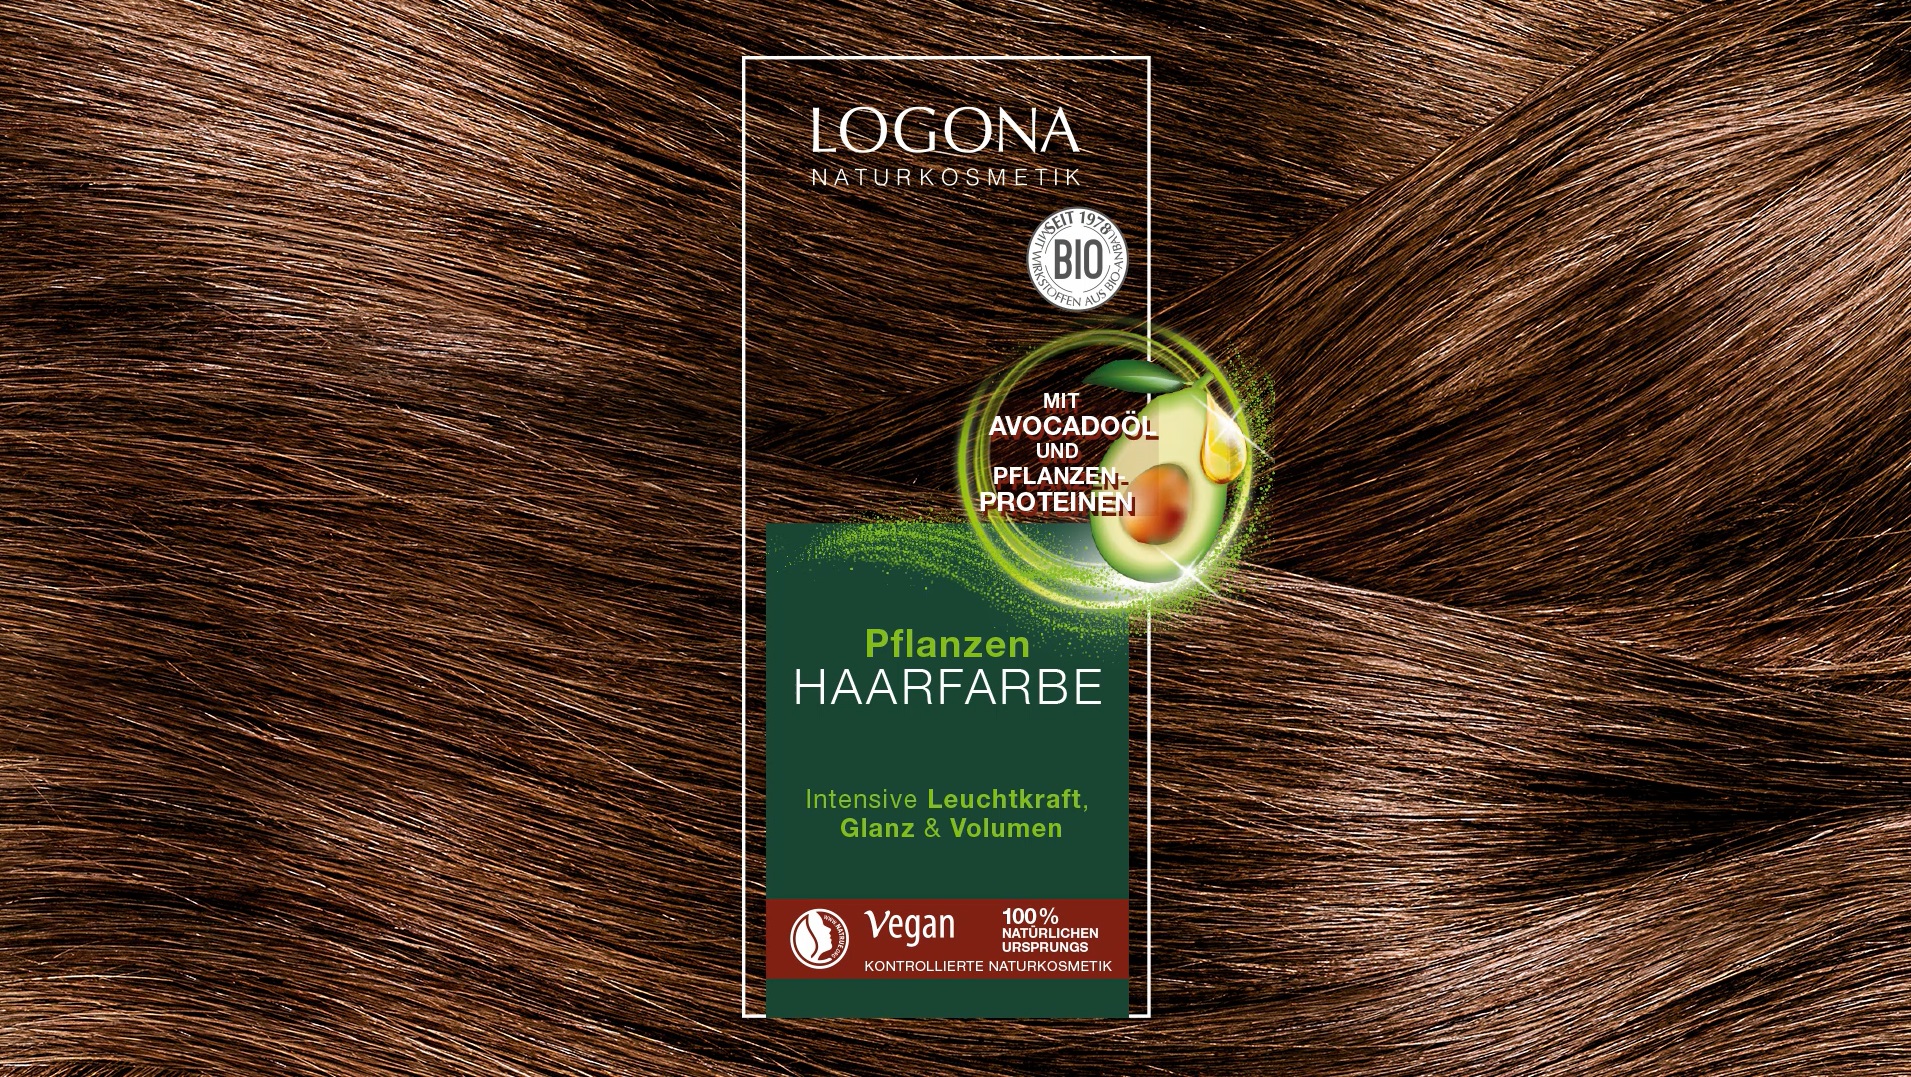 Haarfarbe Pflanzen Haarfarbe Pulver von Logona ❤️ online kaufen |  parfumdreams